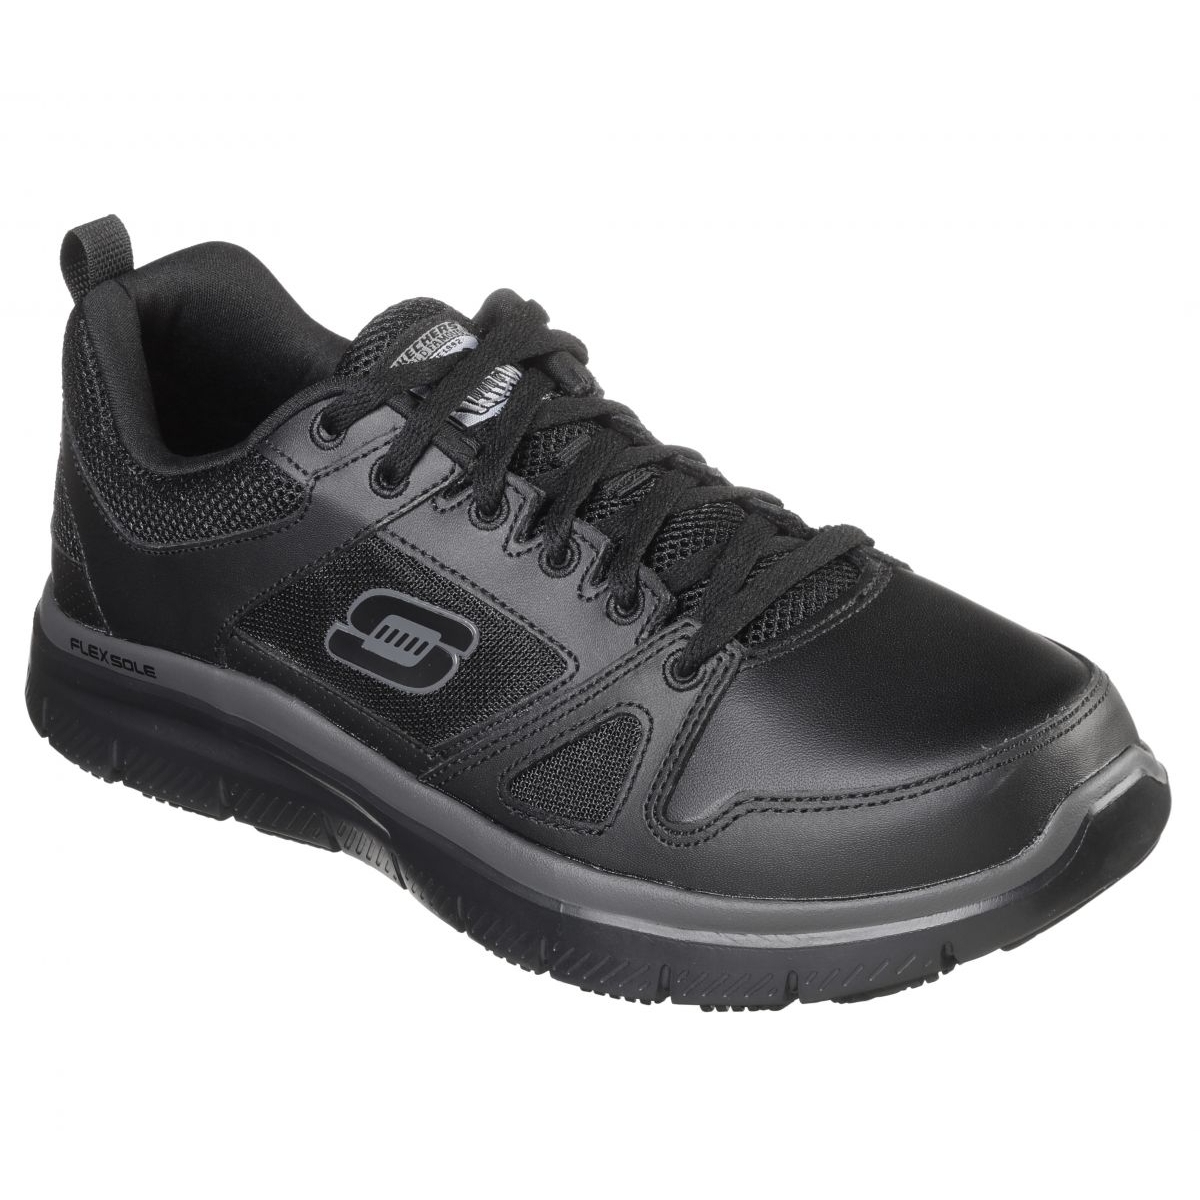 Skechers Men's Flex Advantage SR Work Shoes BLACK - BLACK, 9